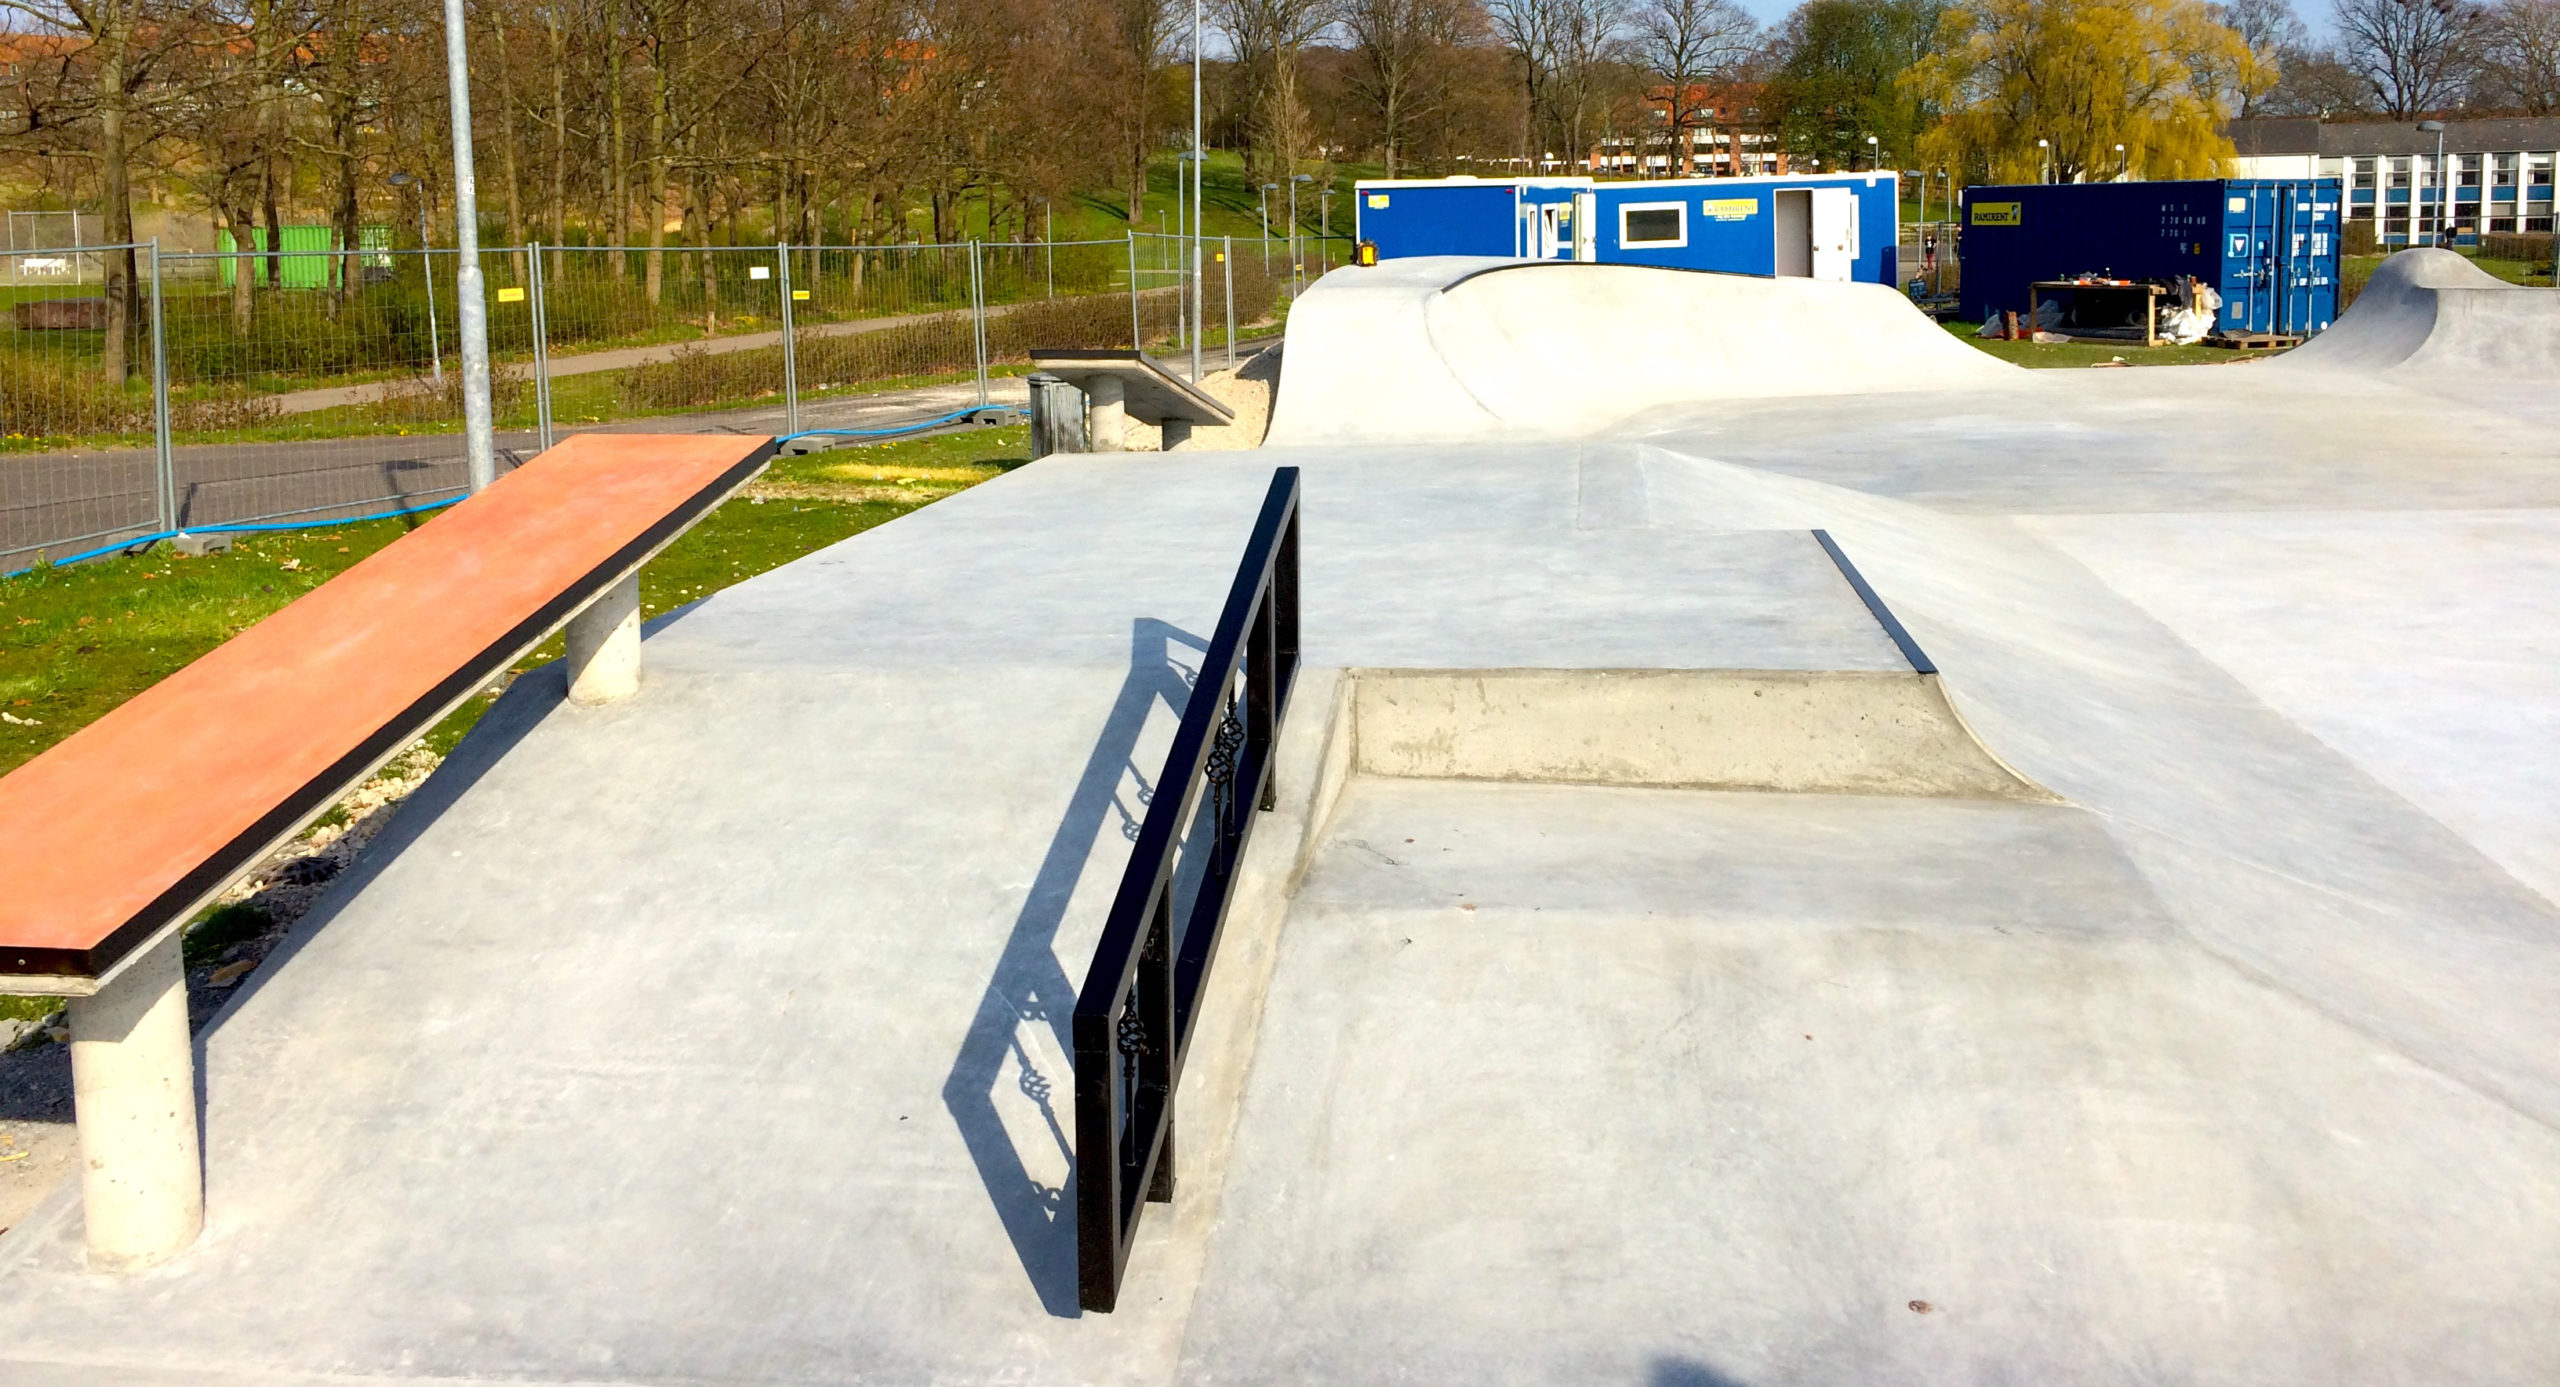 Fra venstre mod højre ses en ledge, et gelænder i metal og et eurogap som indgår i en beton-rampe